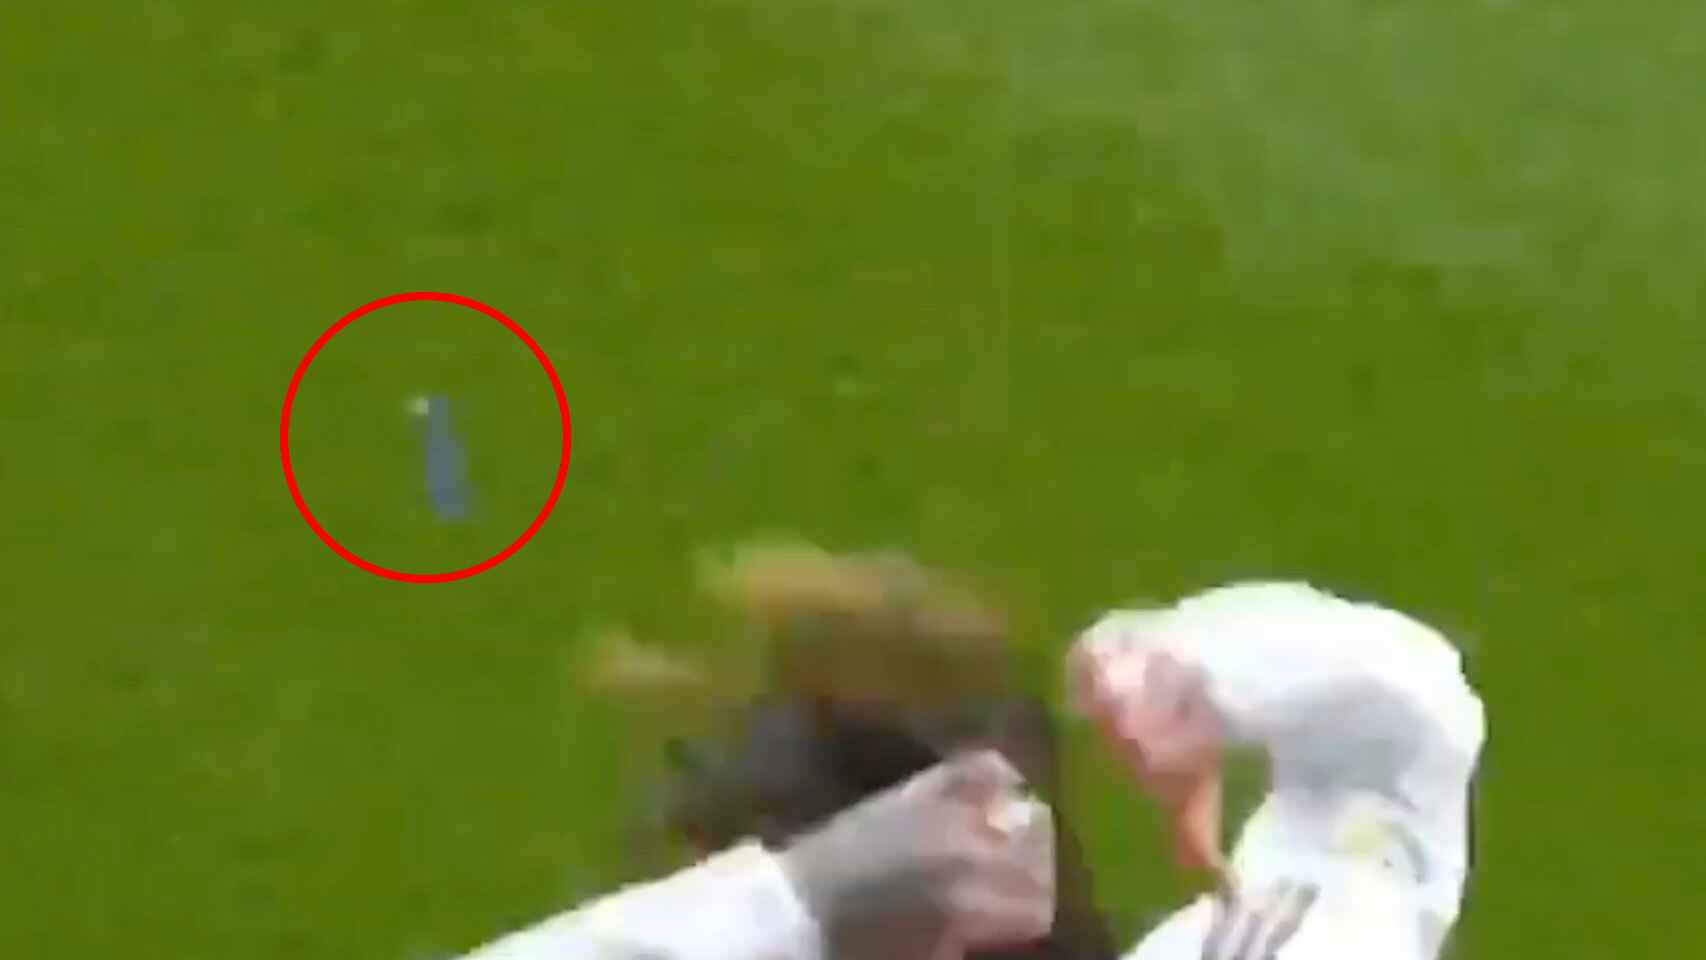 Varios mecheros caen cerca de Sergio Ramos durante la celebración de su gol